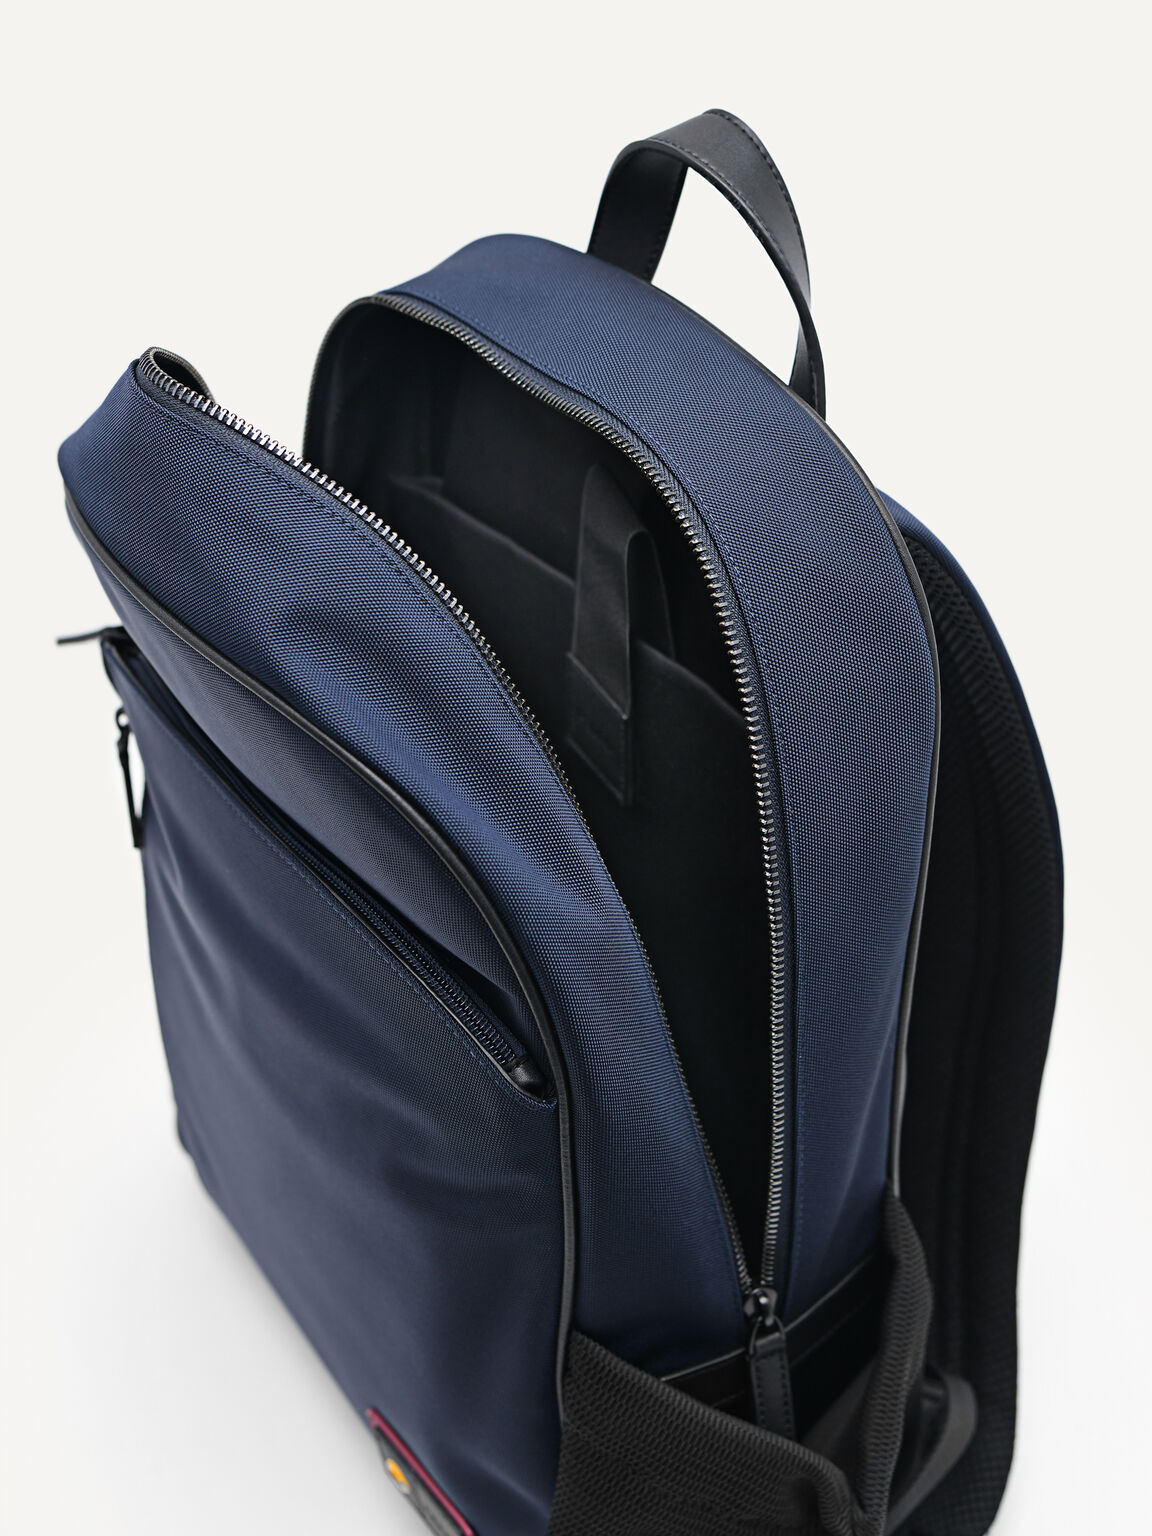 Technical Nylon Backpack, Navy